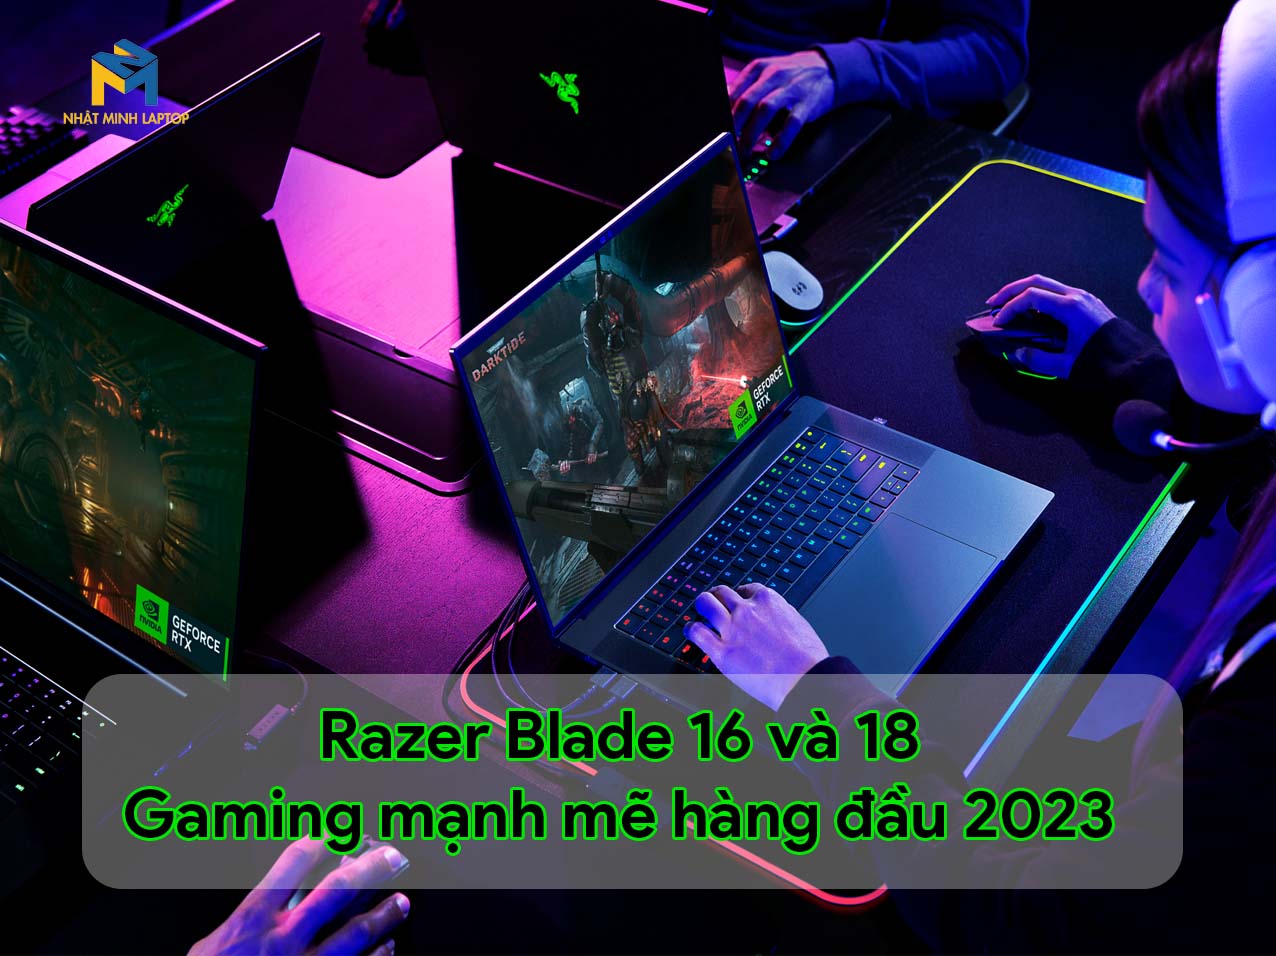 Razer Blade 16 và 18 - Top đầu Laptop Gaming 2023